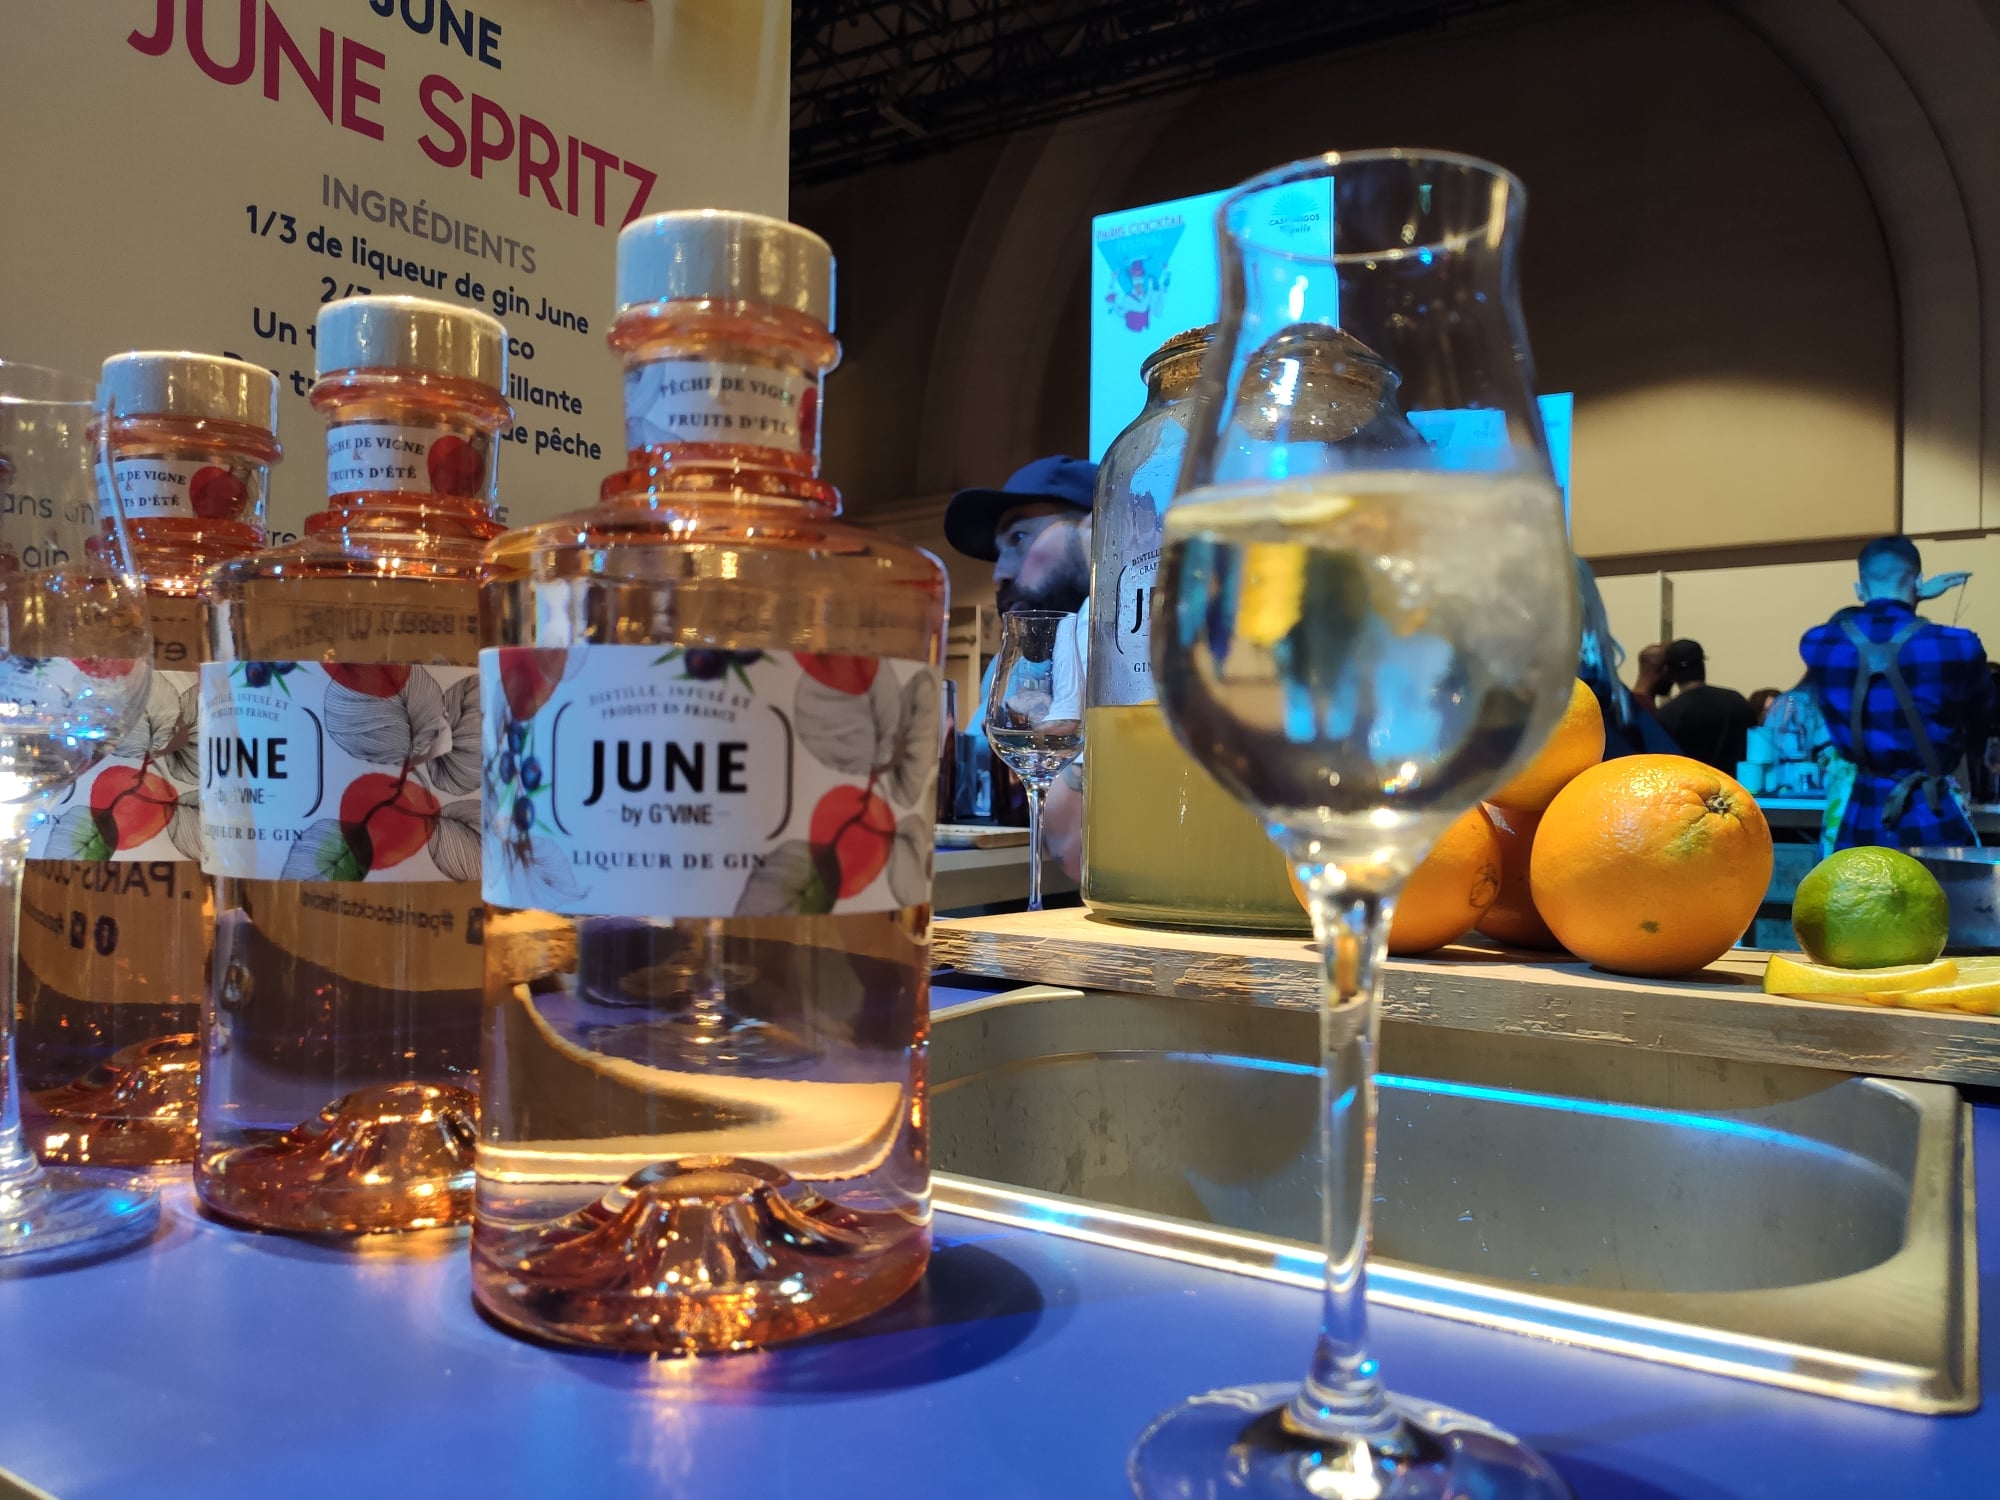 Liqueur de gin June - Renaissance Spirits - Maison Villevert